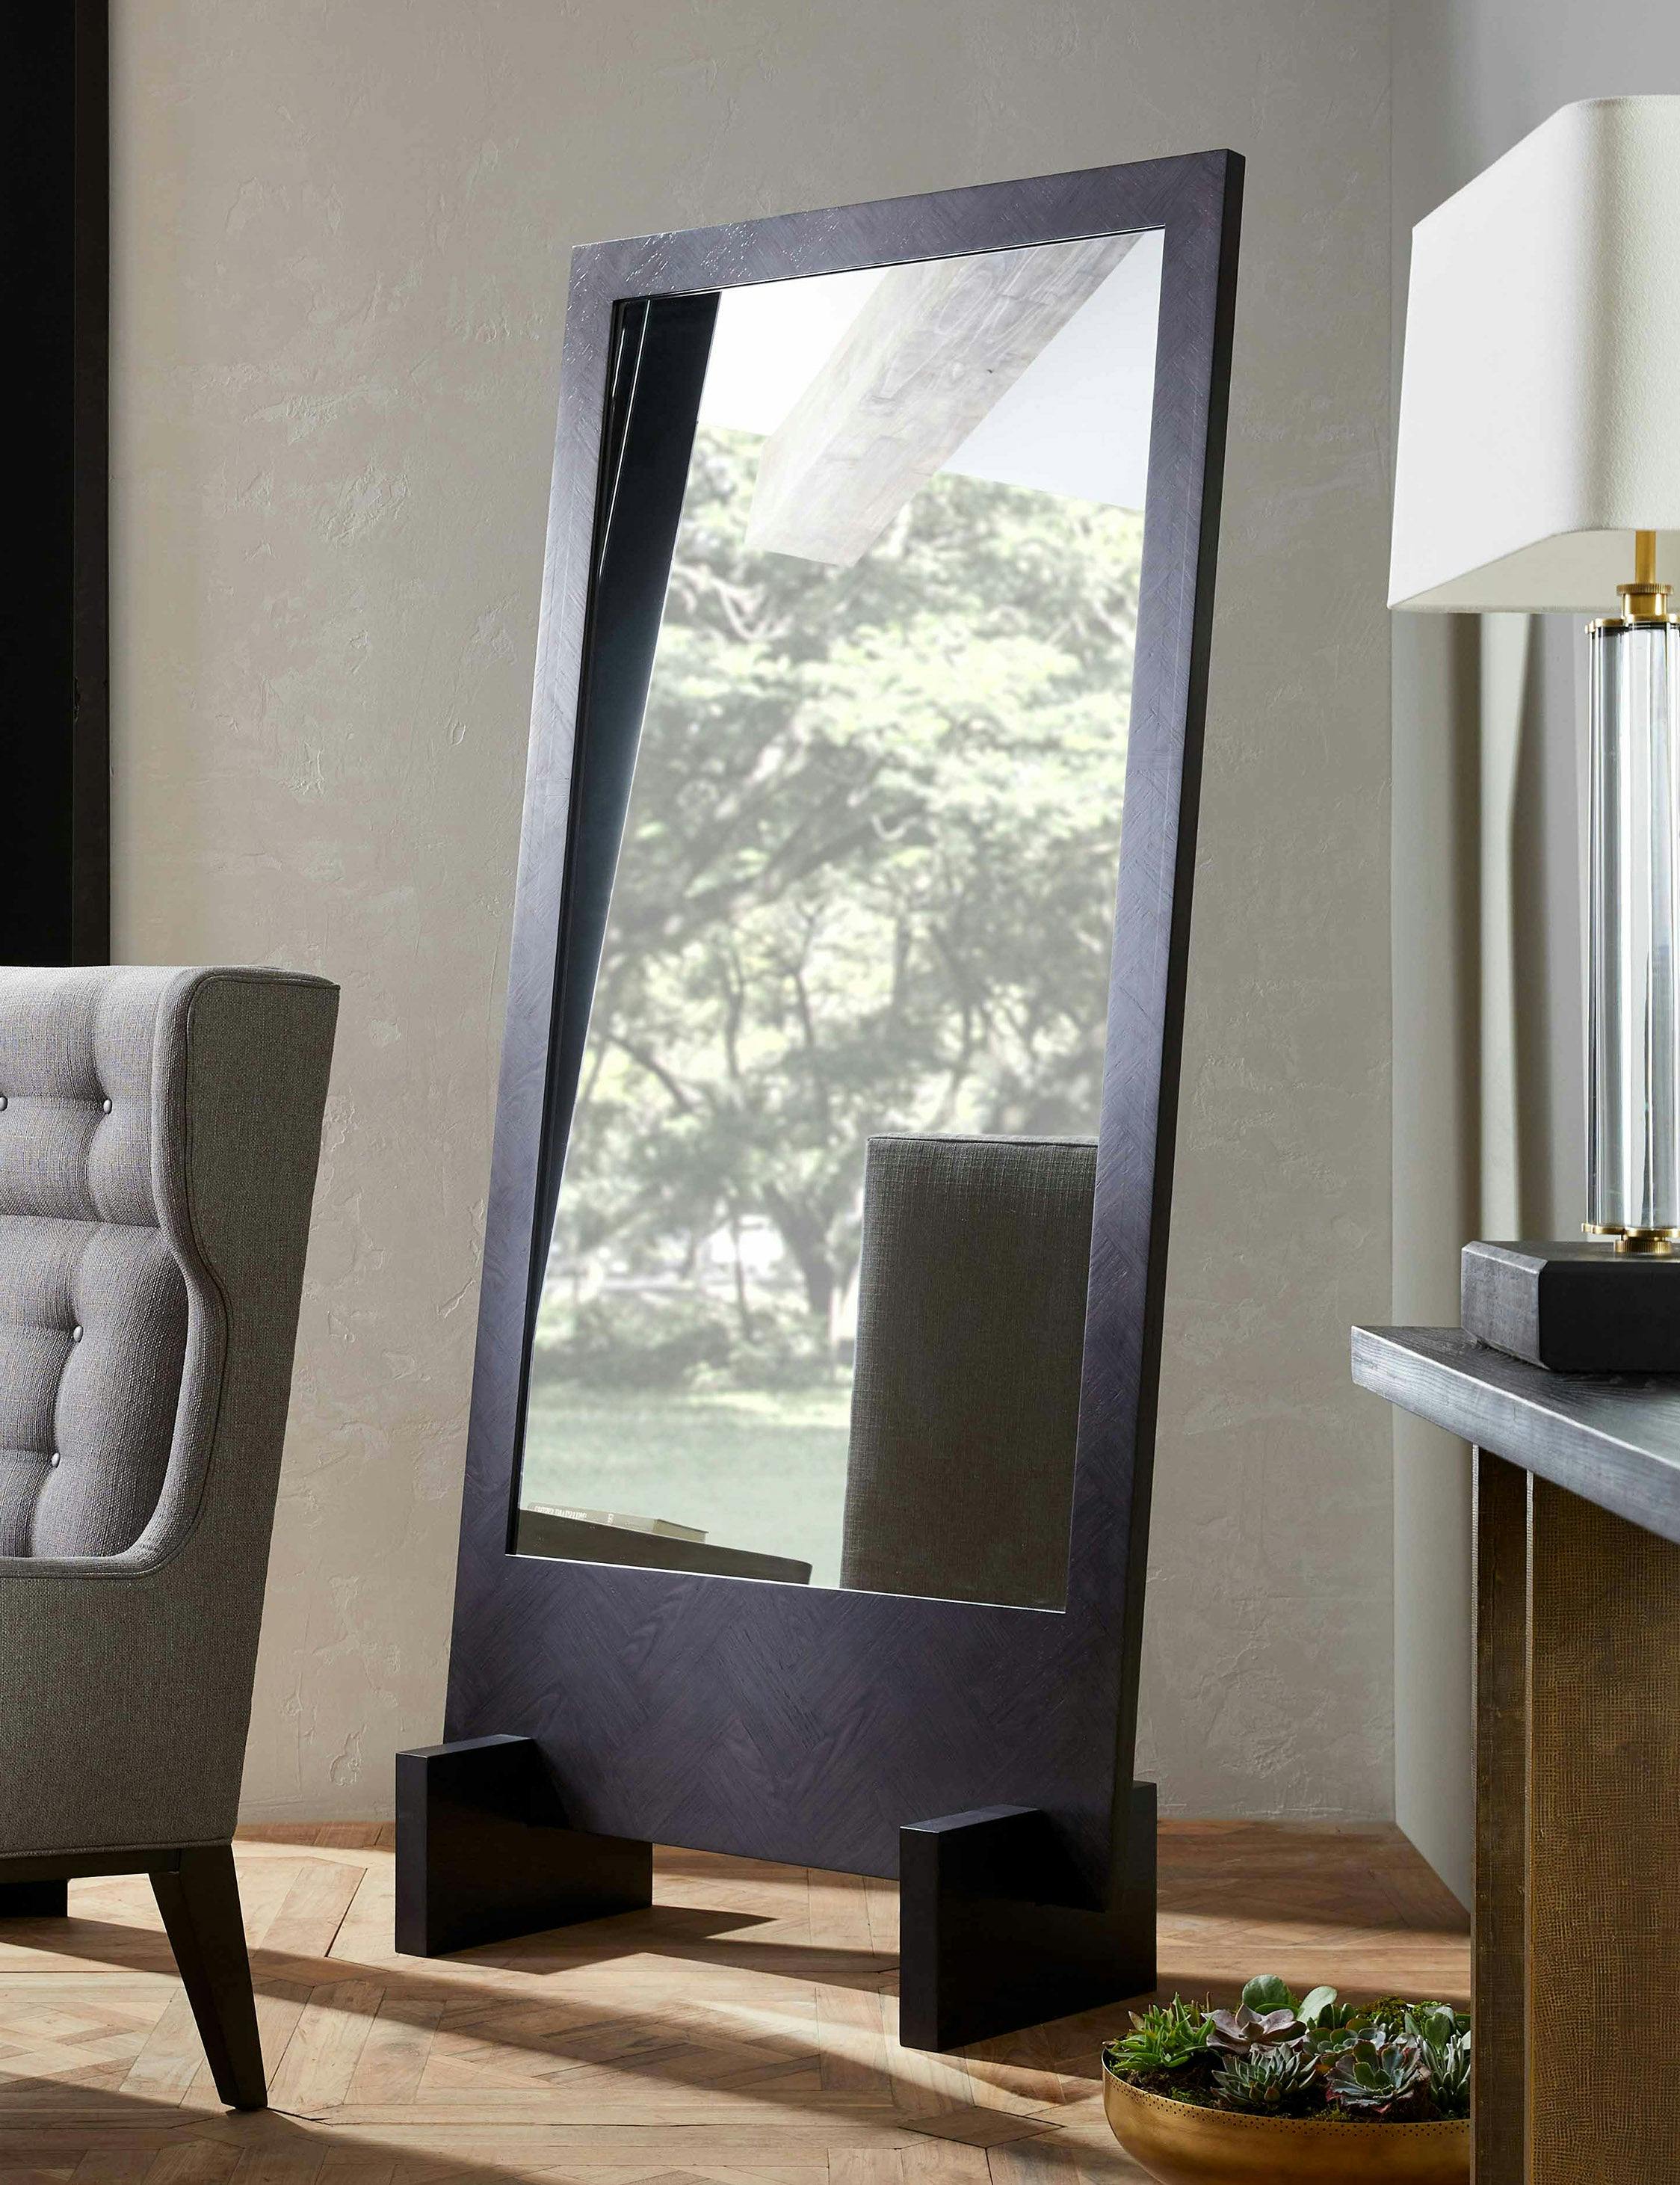 Banfi Ebony Oak Veneer Full-Length Rectangular Floor Mirror